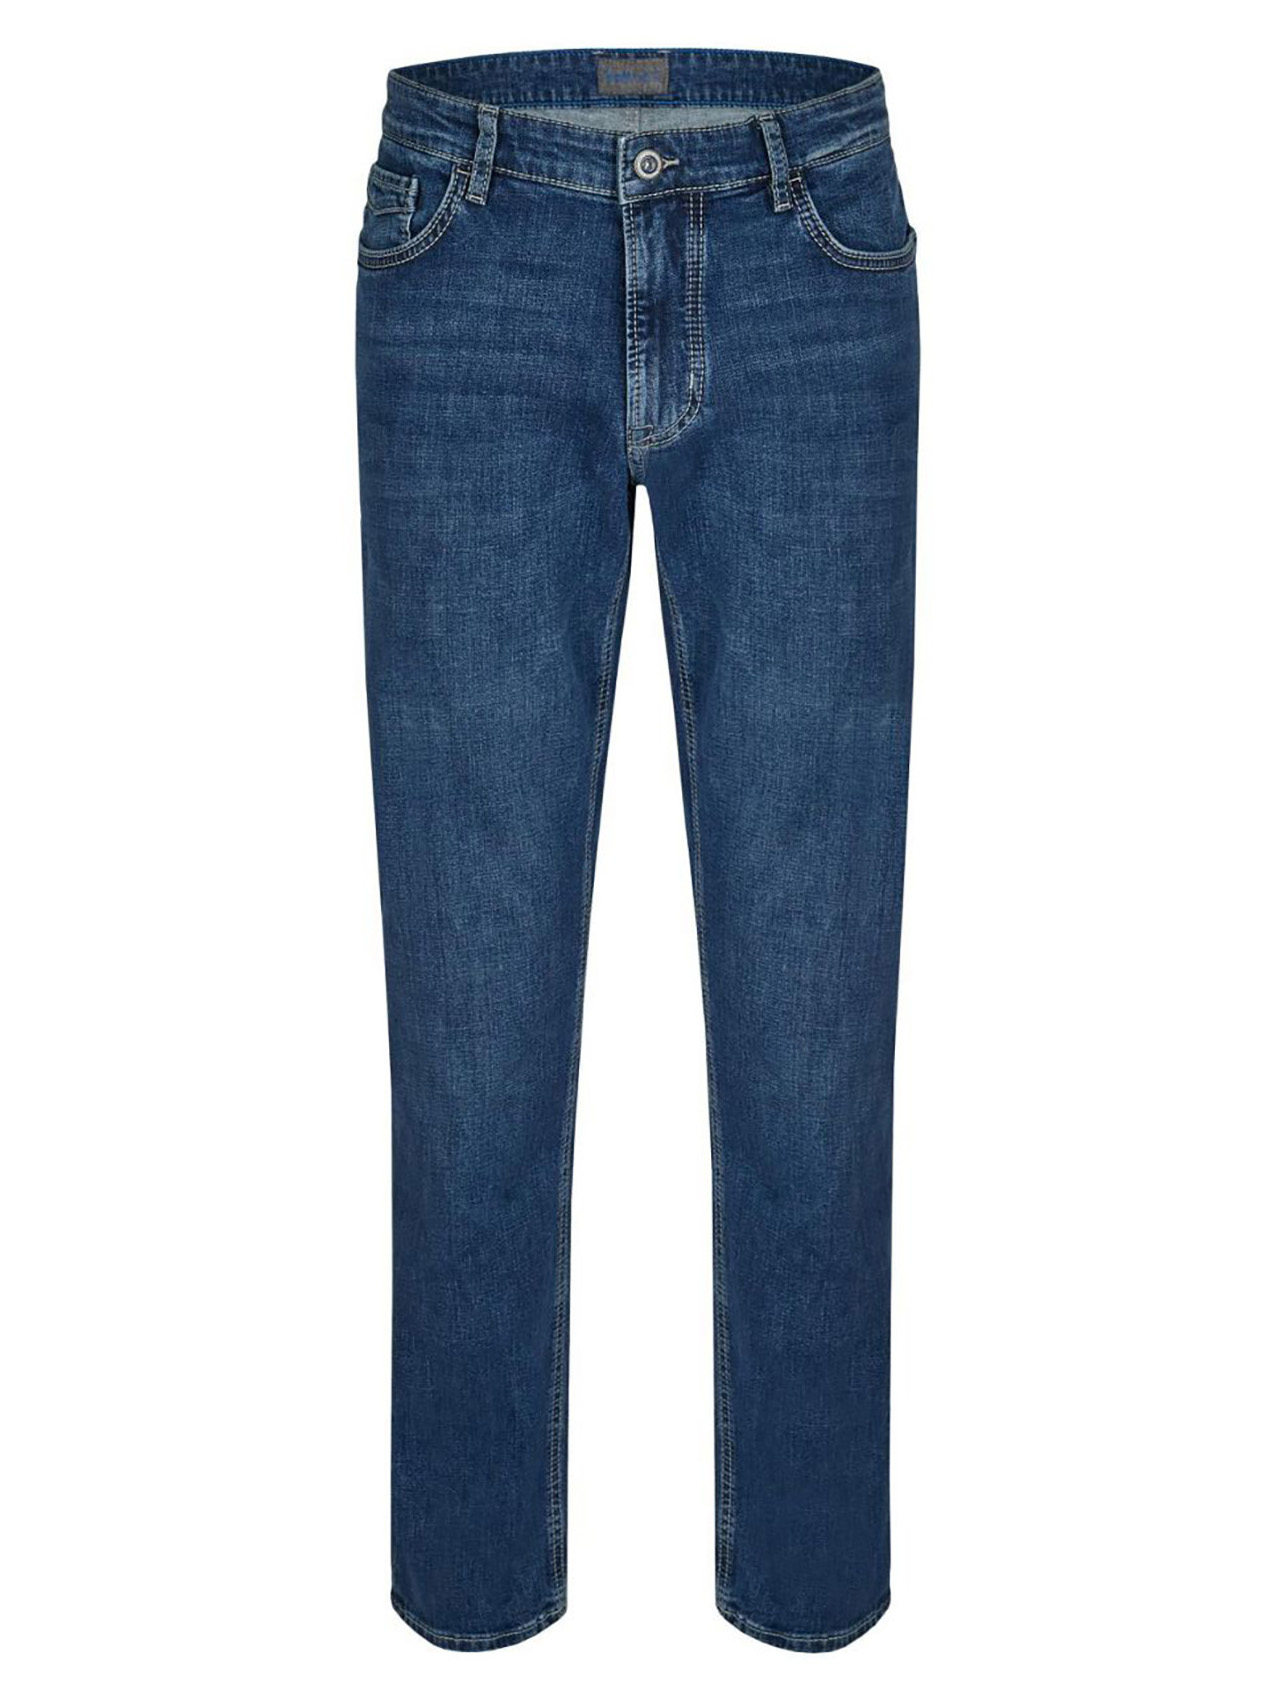 tweedehands Taille Spoedig Grote maten jeans heren - Spijkerbroeken t/m 180cm in omvang!